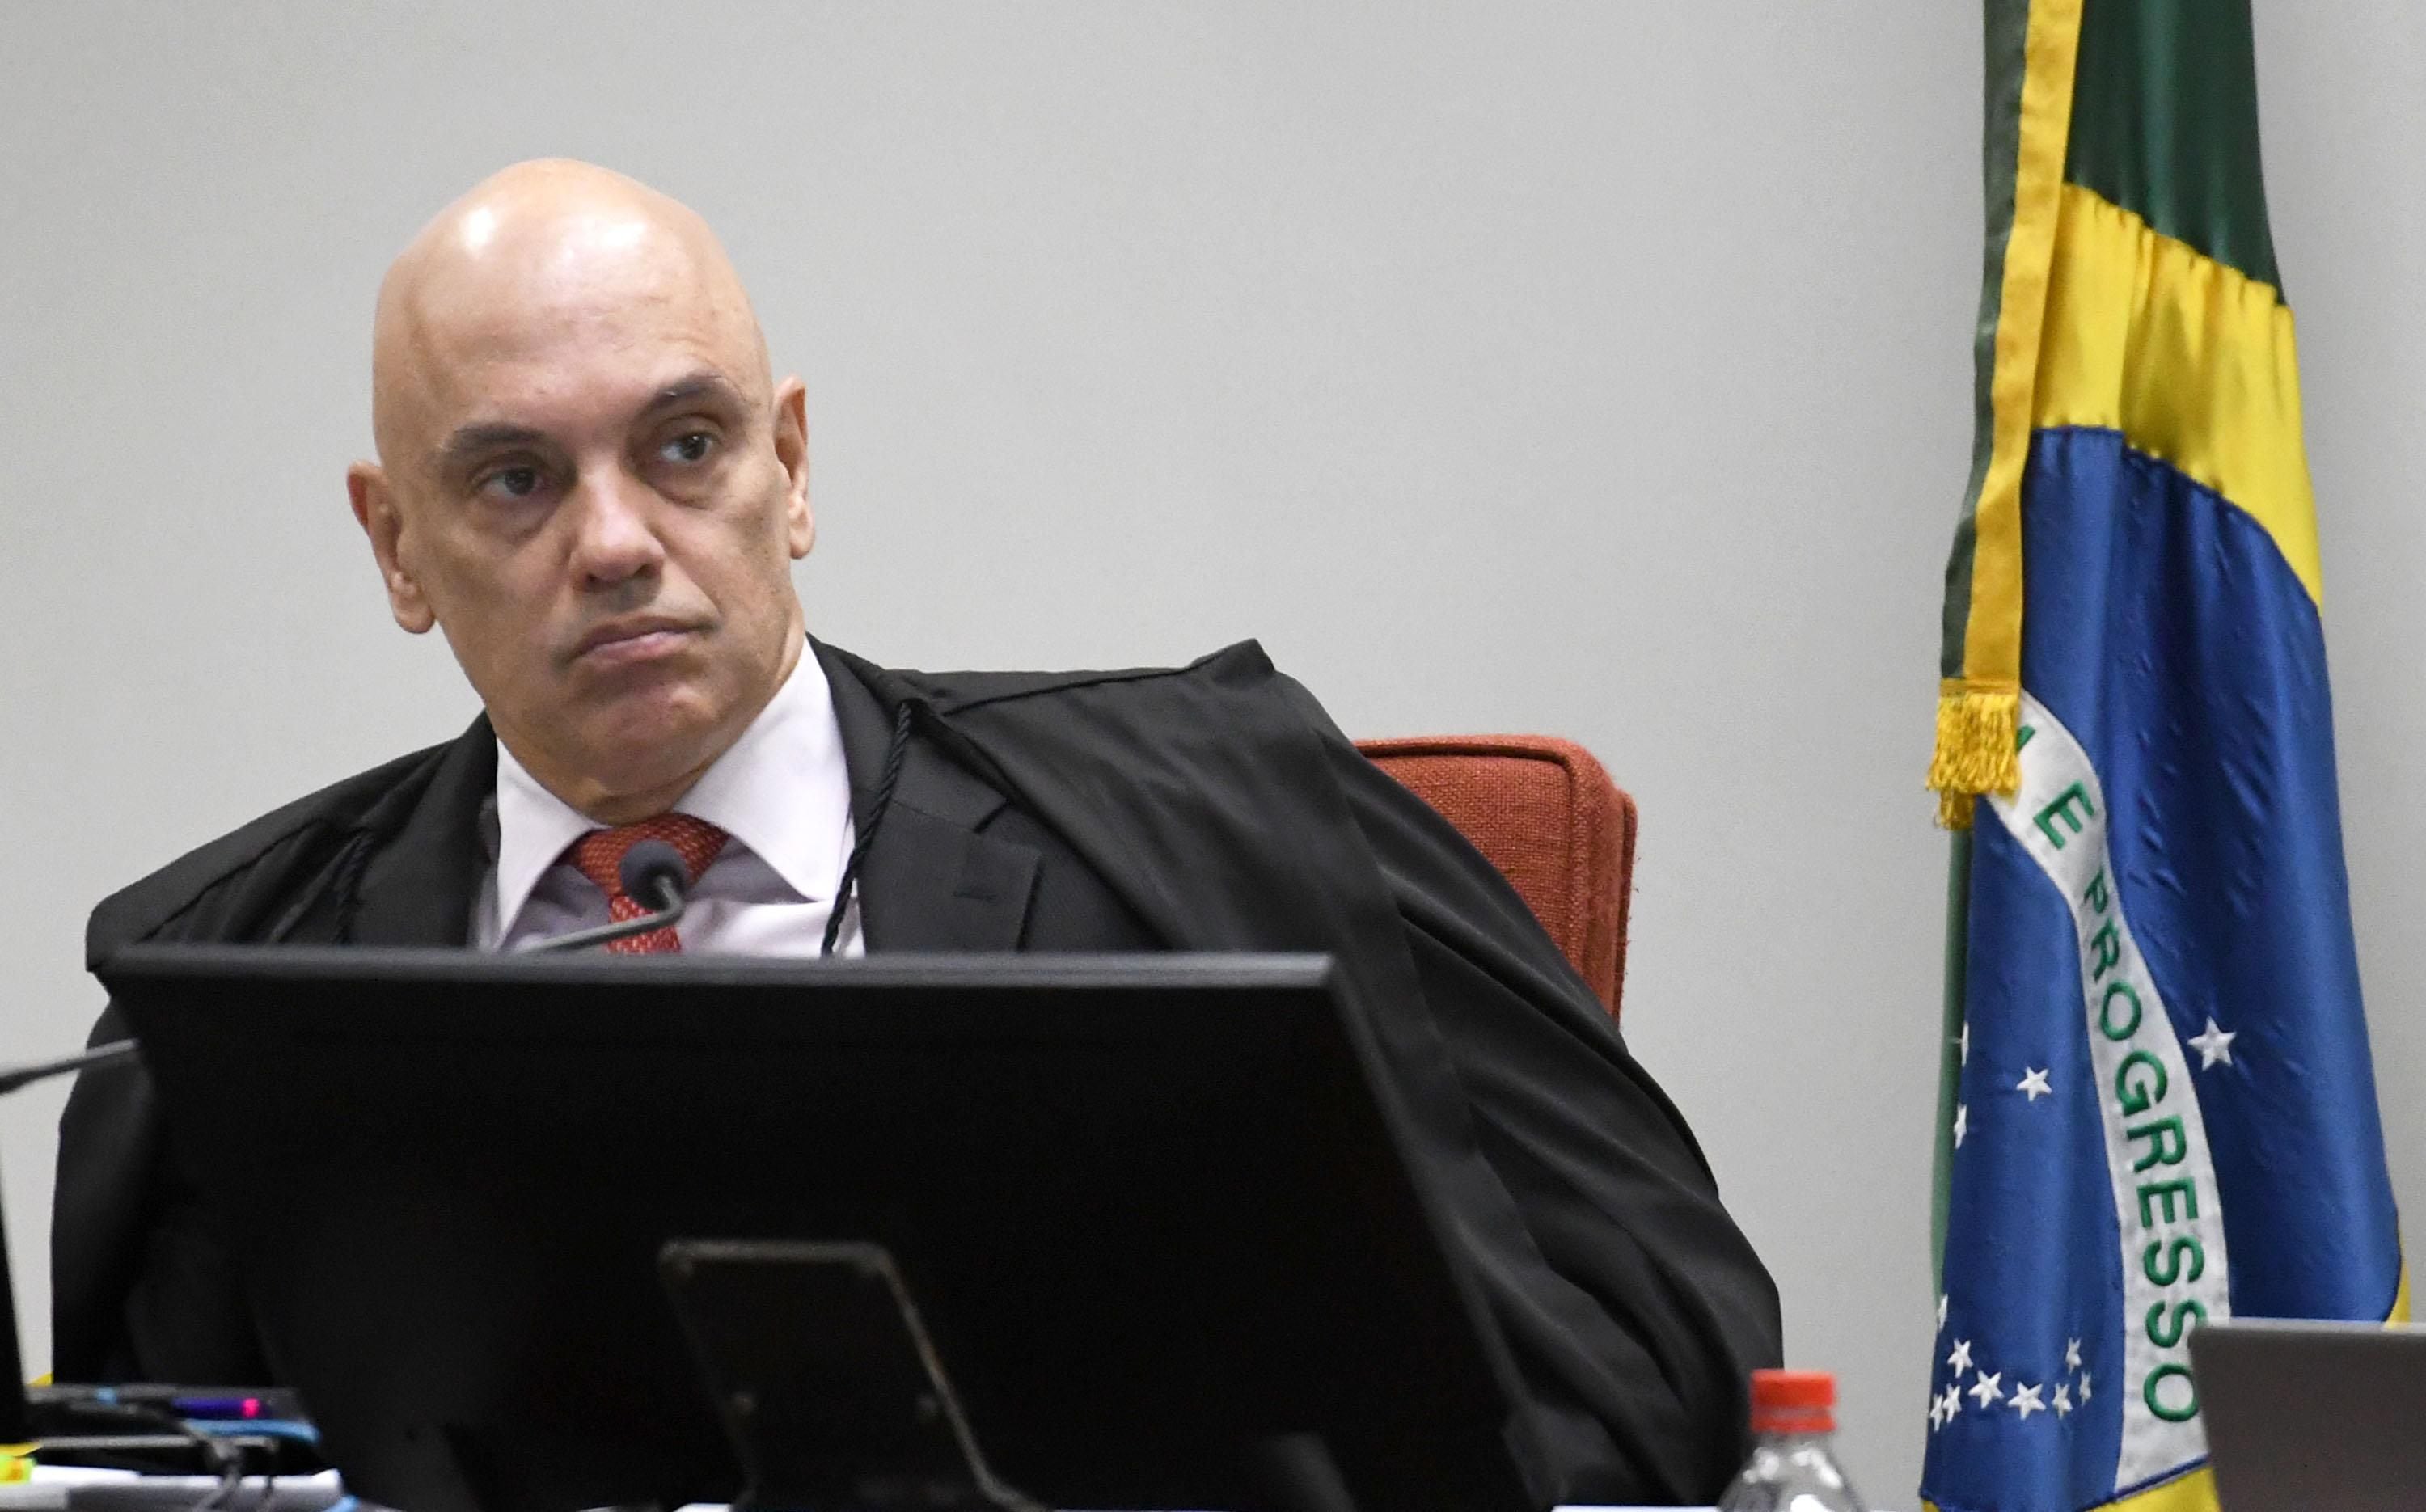 Decisão de Moraes contra o PL: Entenda o cálculo da multa e o suposto crime  - Estadão